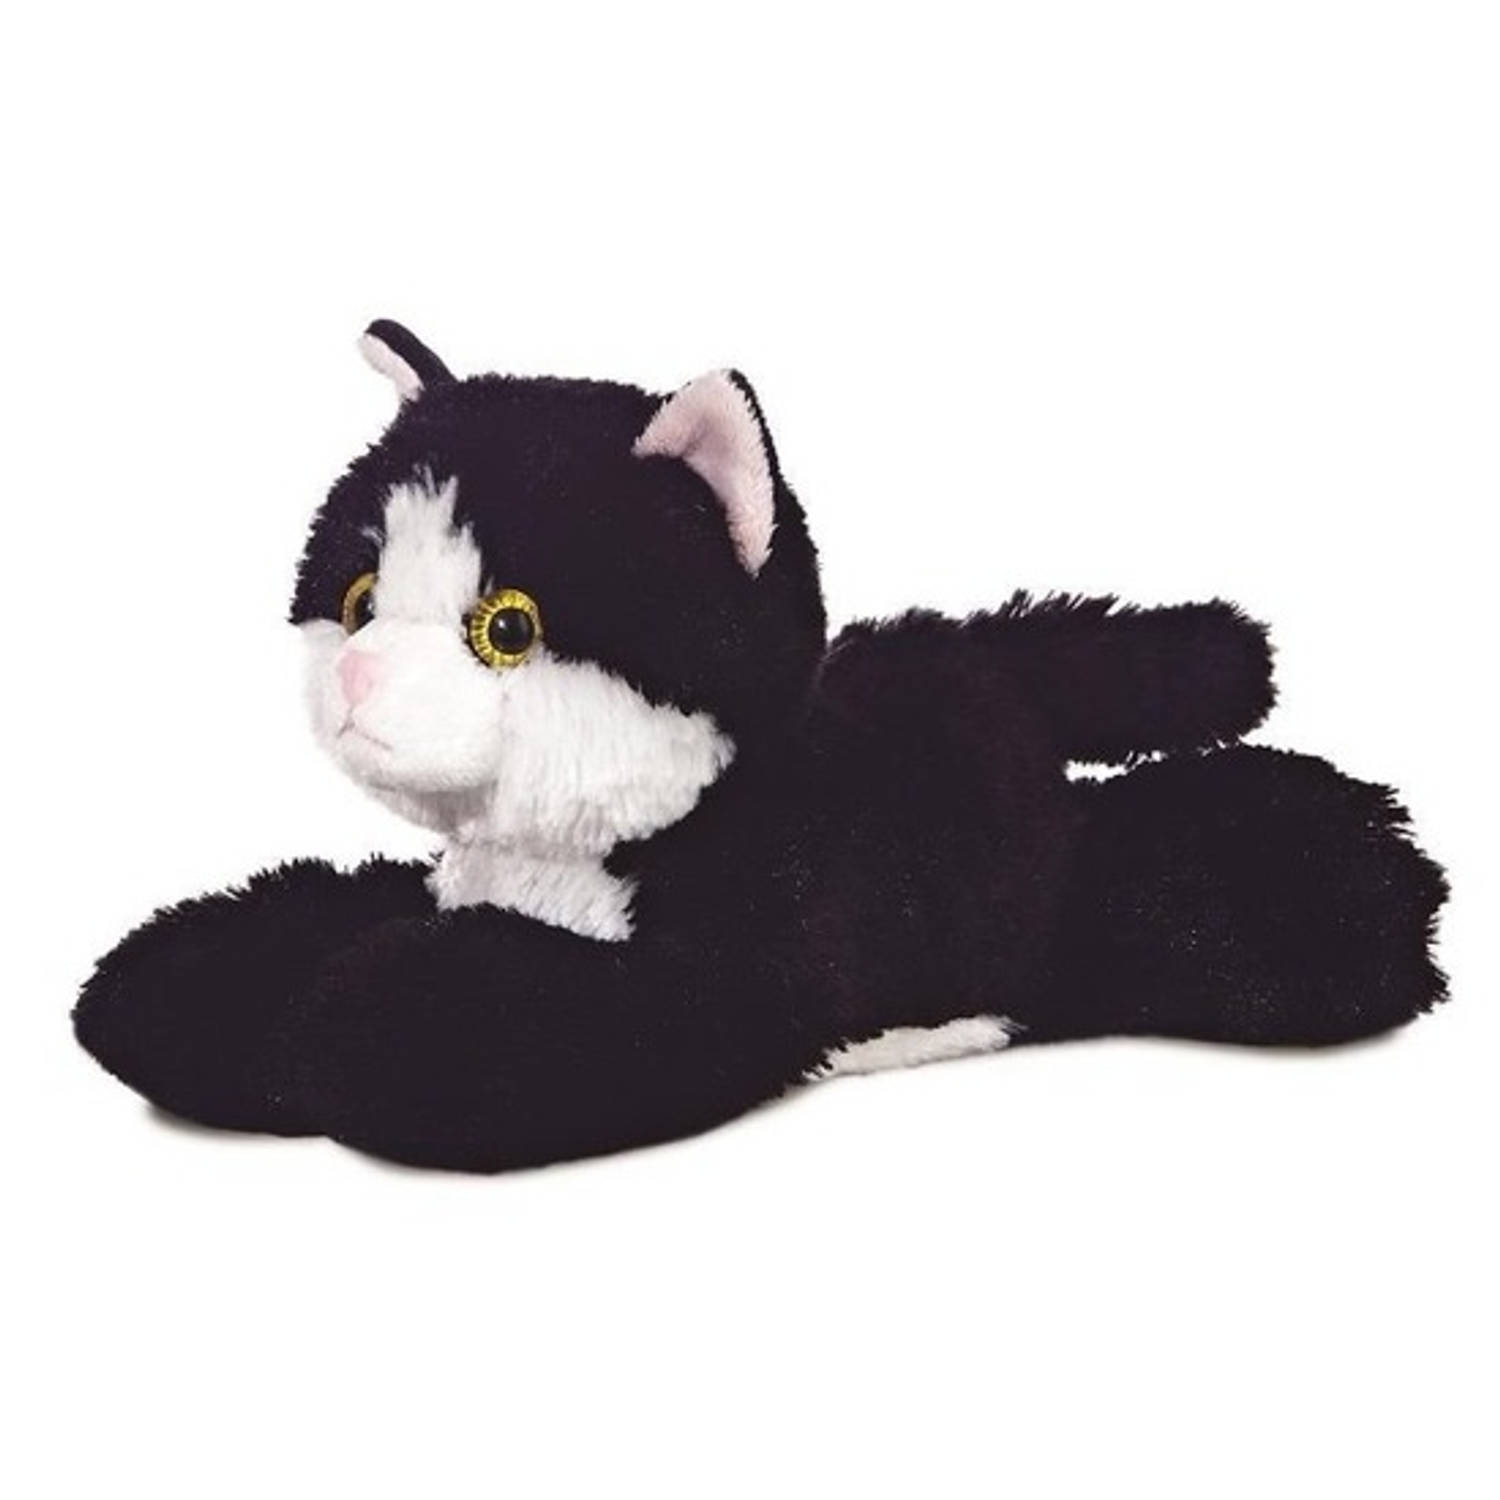 Maand moeilijk Onrecht Pluche zwart/witte kat/poes knuffel 20 cm - Poezen/katten huisdieren  knuffels - Speelgoed voor peuters/kinderen | Blokker